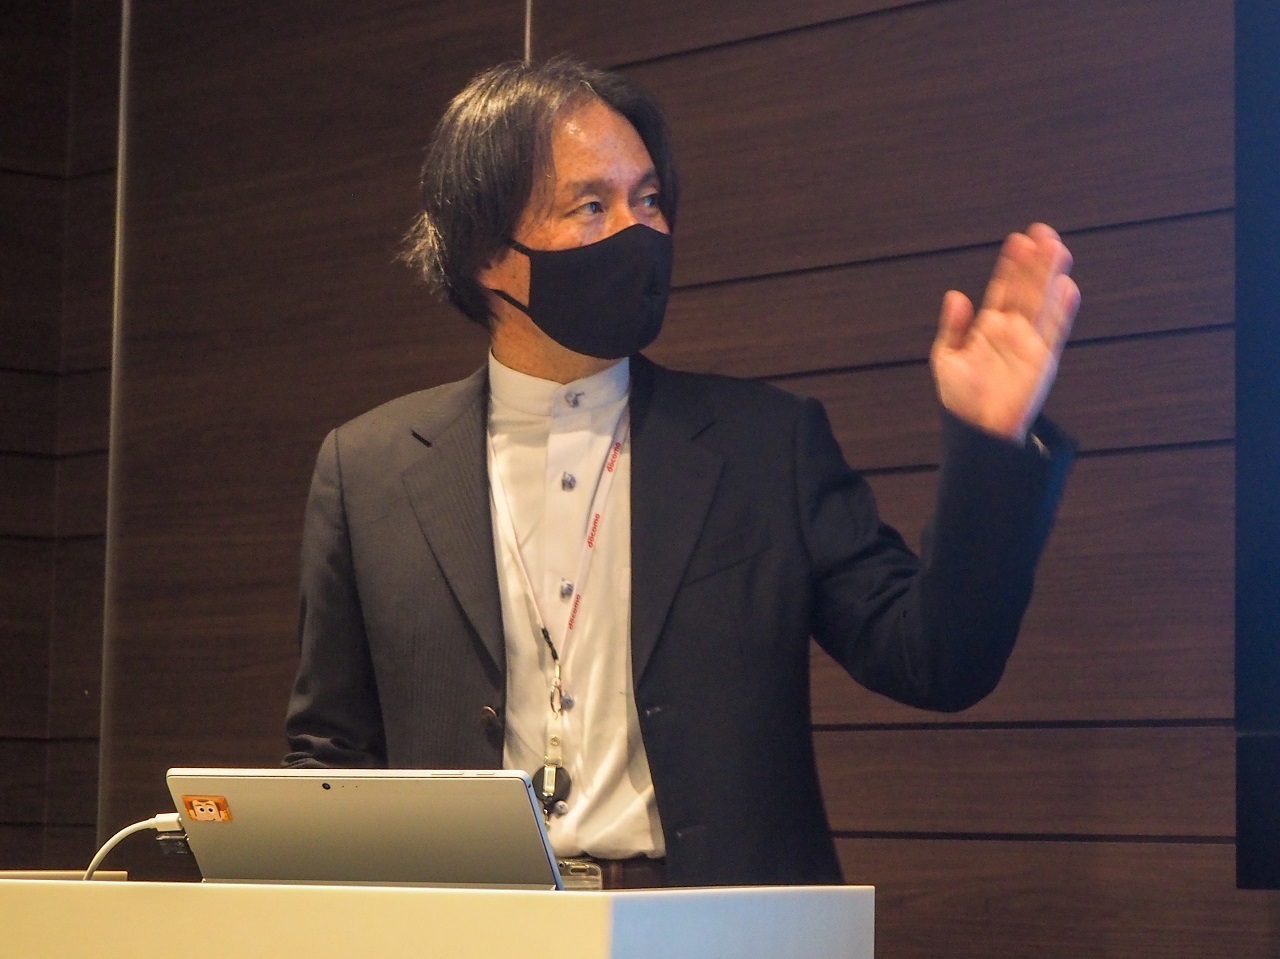 記者向け体験会に現れた石田氏。「トーンモバイル for docomo」の新機種や新機能などについて説明した